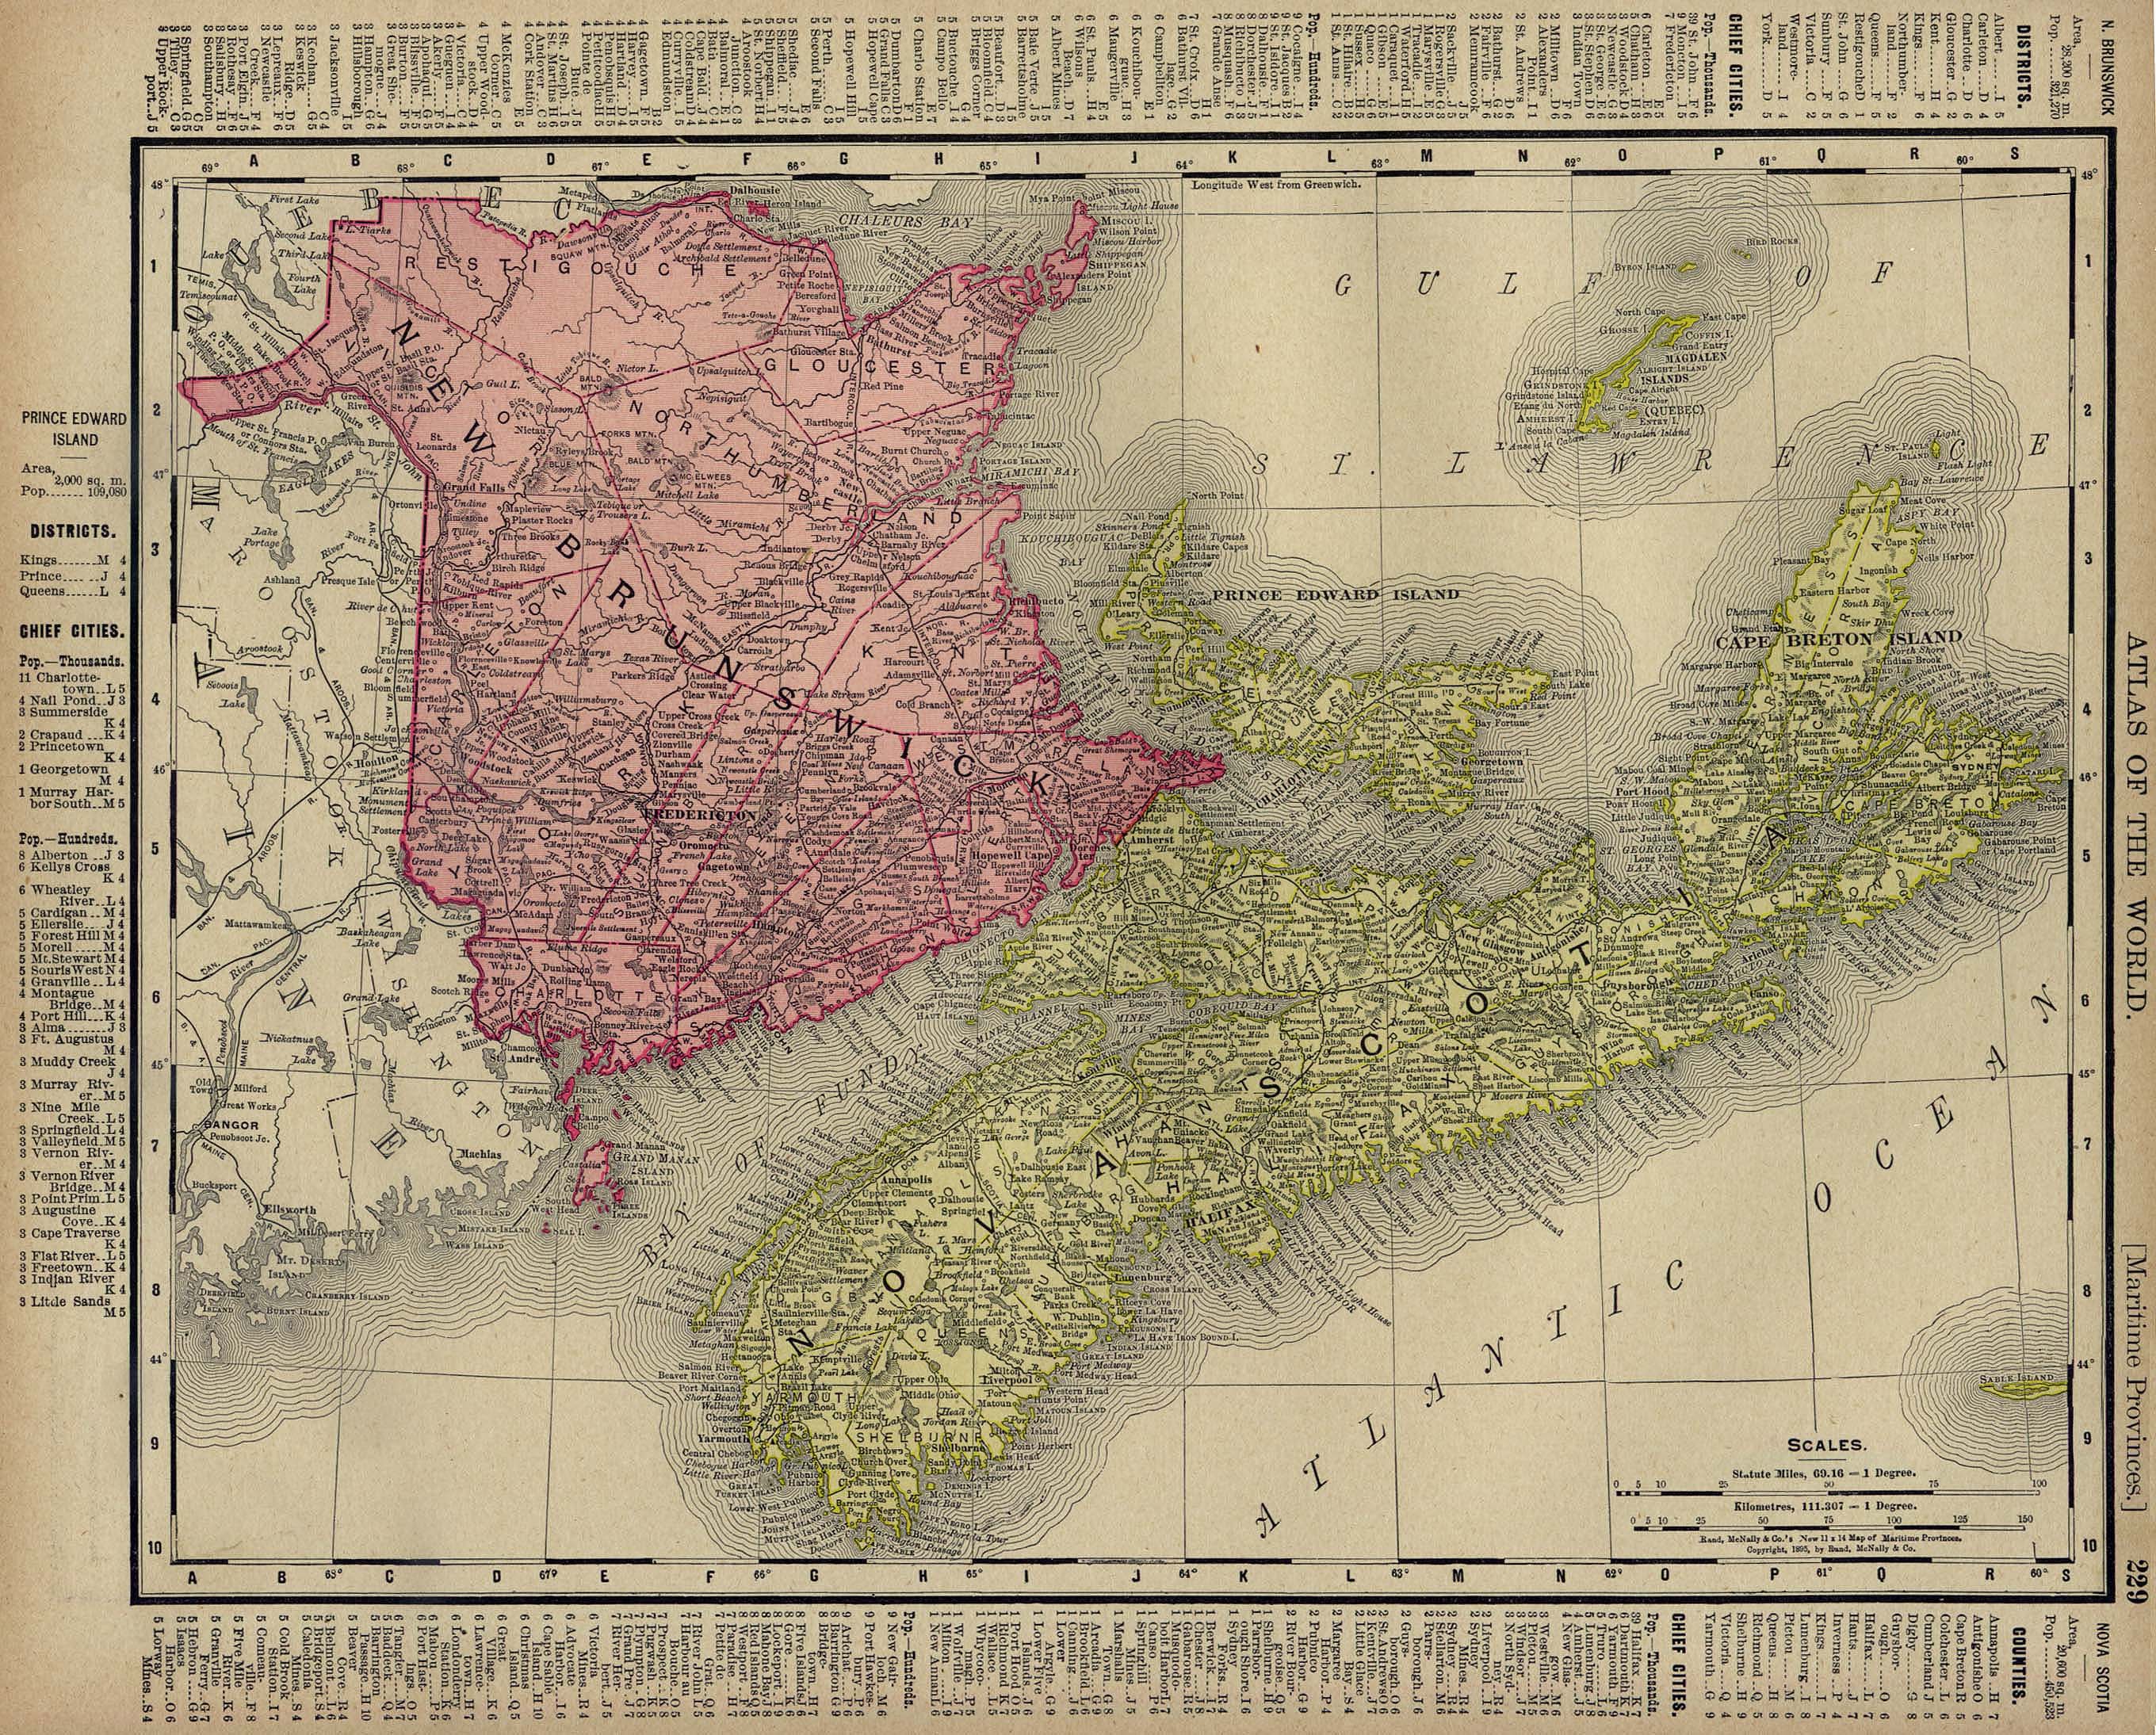 Mapa de Nueva Escocia, Nuevo Brunswick, Isla del Príncipe Eduardo, Canadá 1895